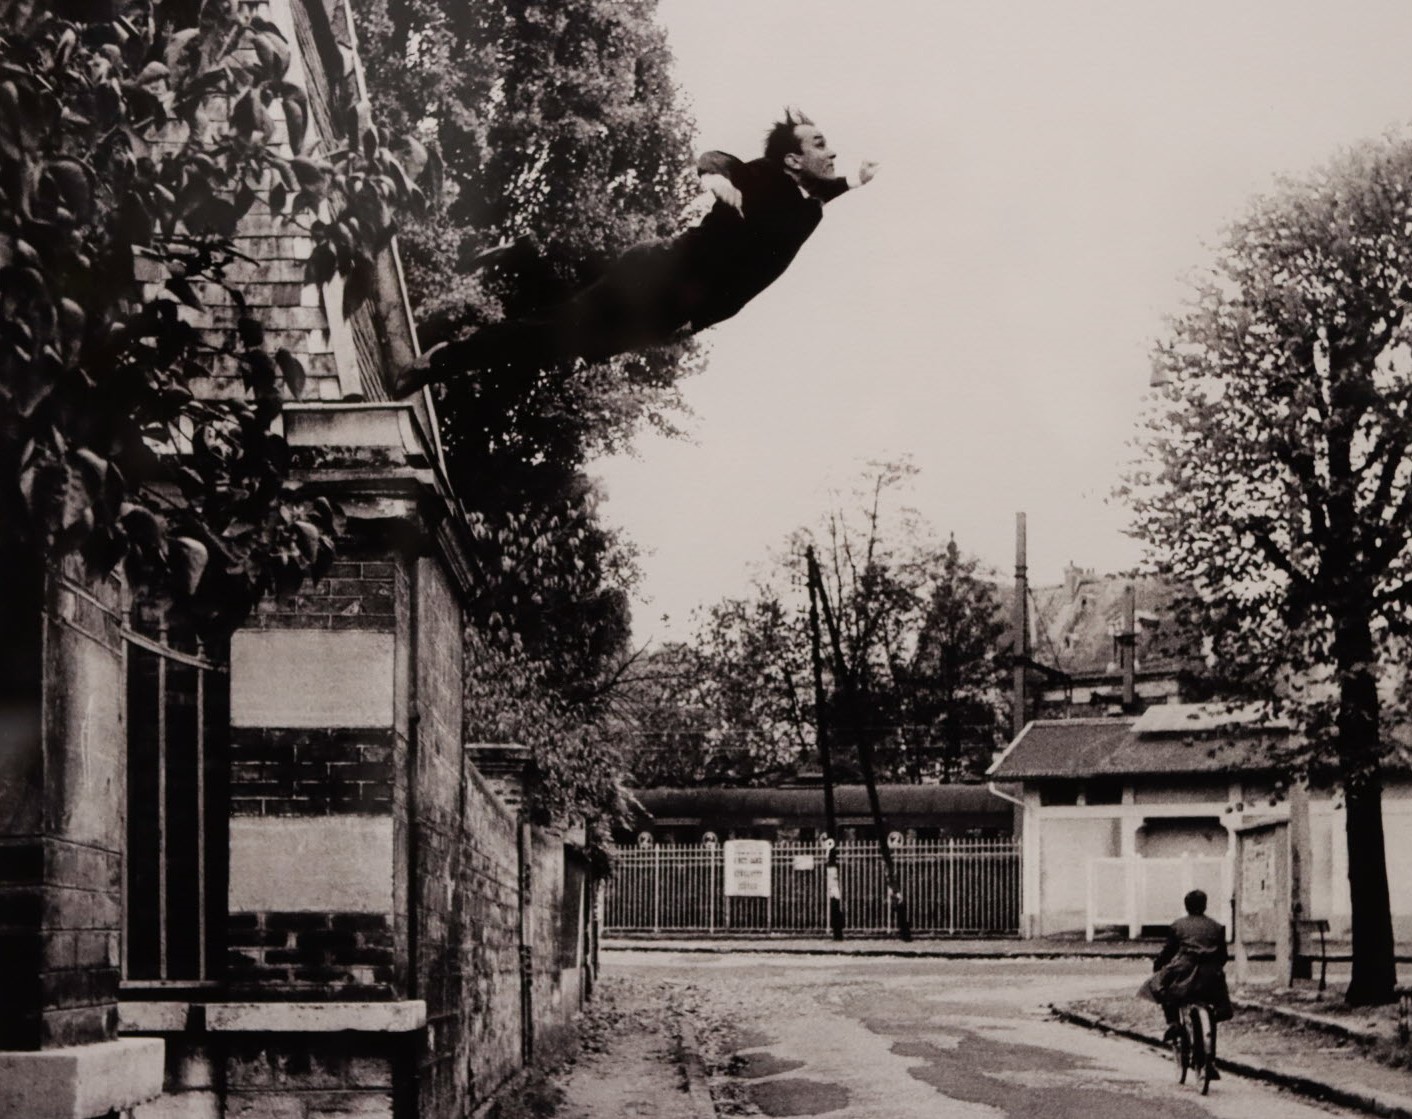 photo en noir et blanc d'une rue vide, un piéton au loin et un homme qui plonge d'un mur au premier plan